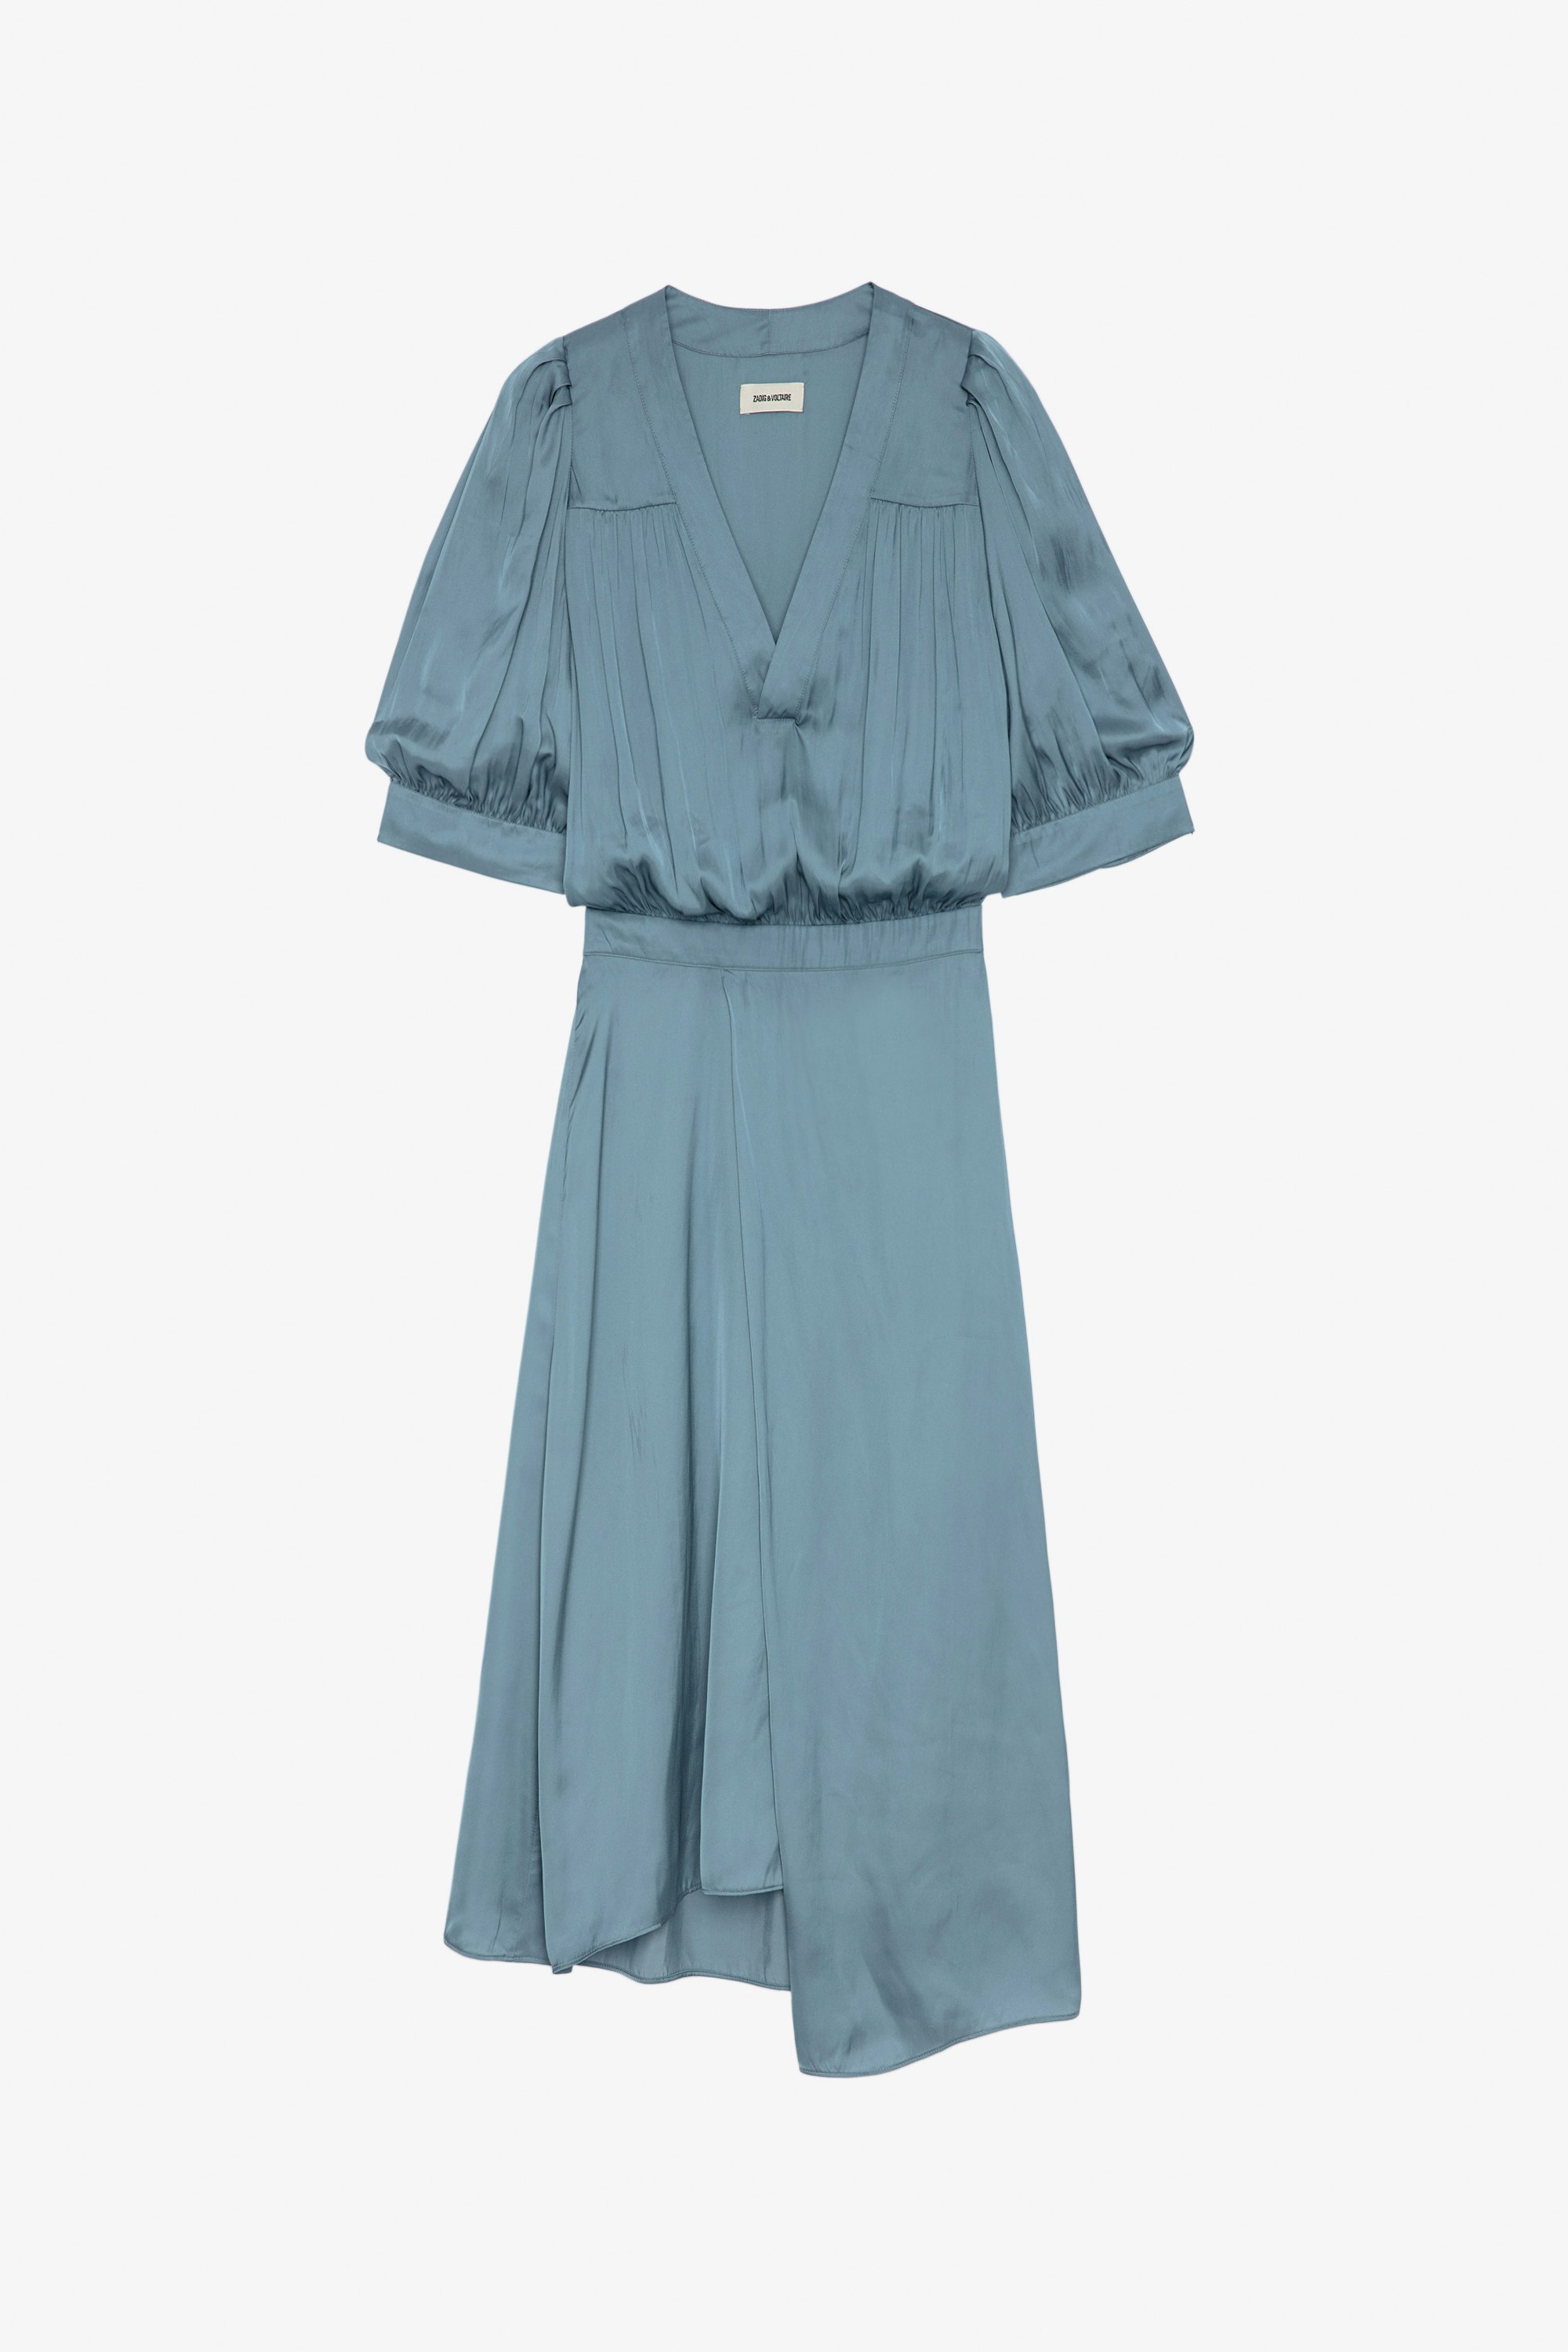 Kleid Ralia Halblanges Damenkleid aus himmelblauem Satin mit kurzen Ballonärmeln